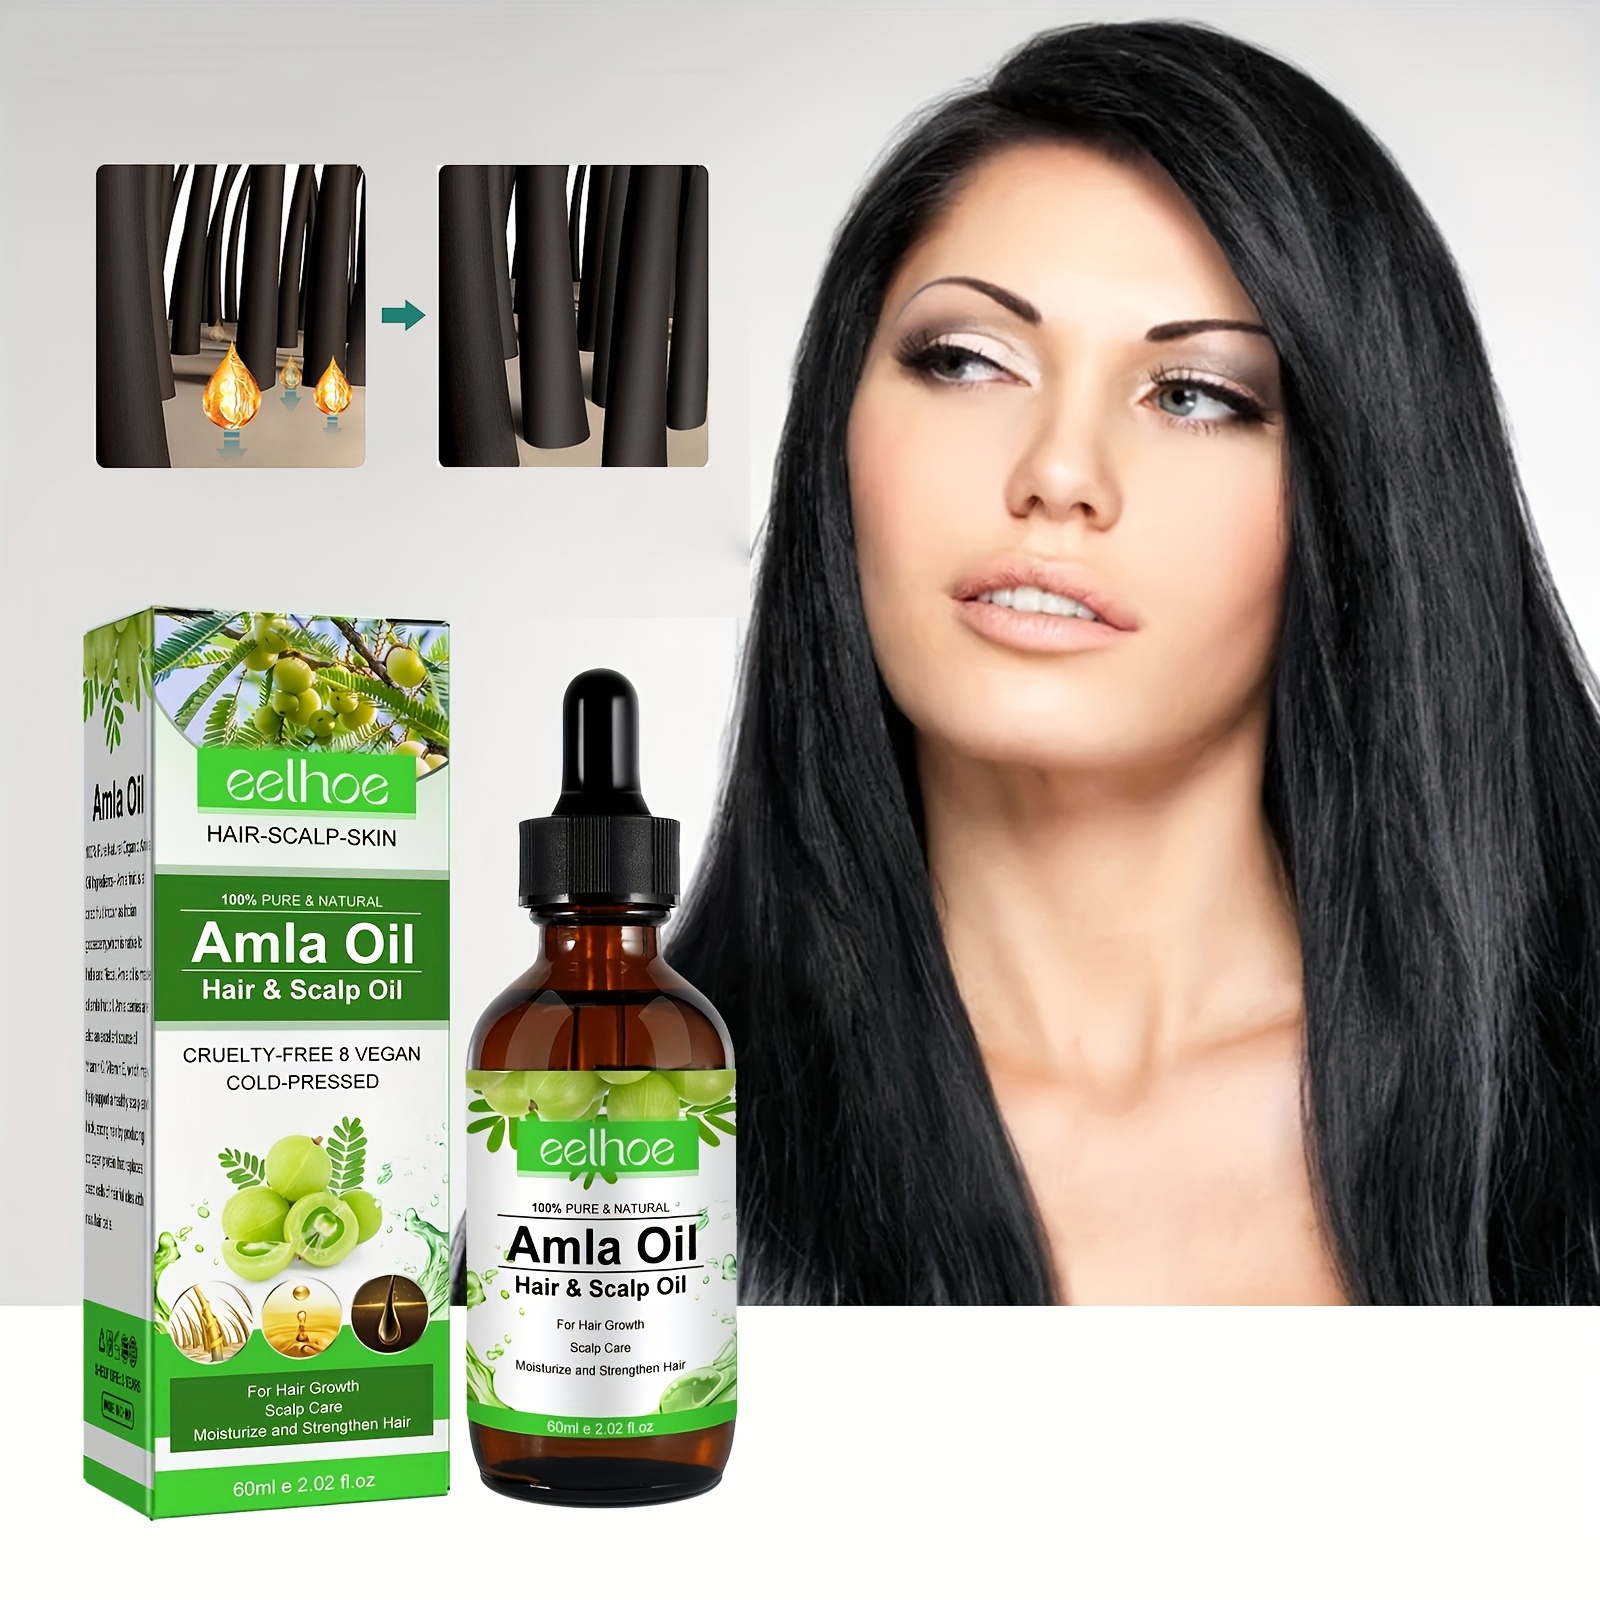 Dabur Amla Hair Oil - Amla Oil, Amla Hair Oil, Amla Oil for Healthy Hair  and Moisturized Scalp, Indian Hair Oil for Men and Women, Bio Oil for Hair